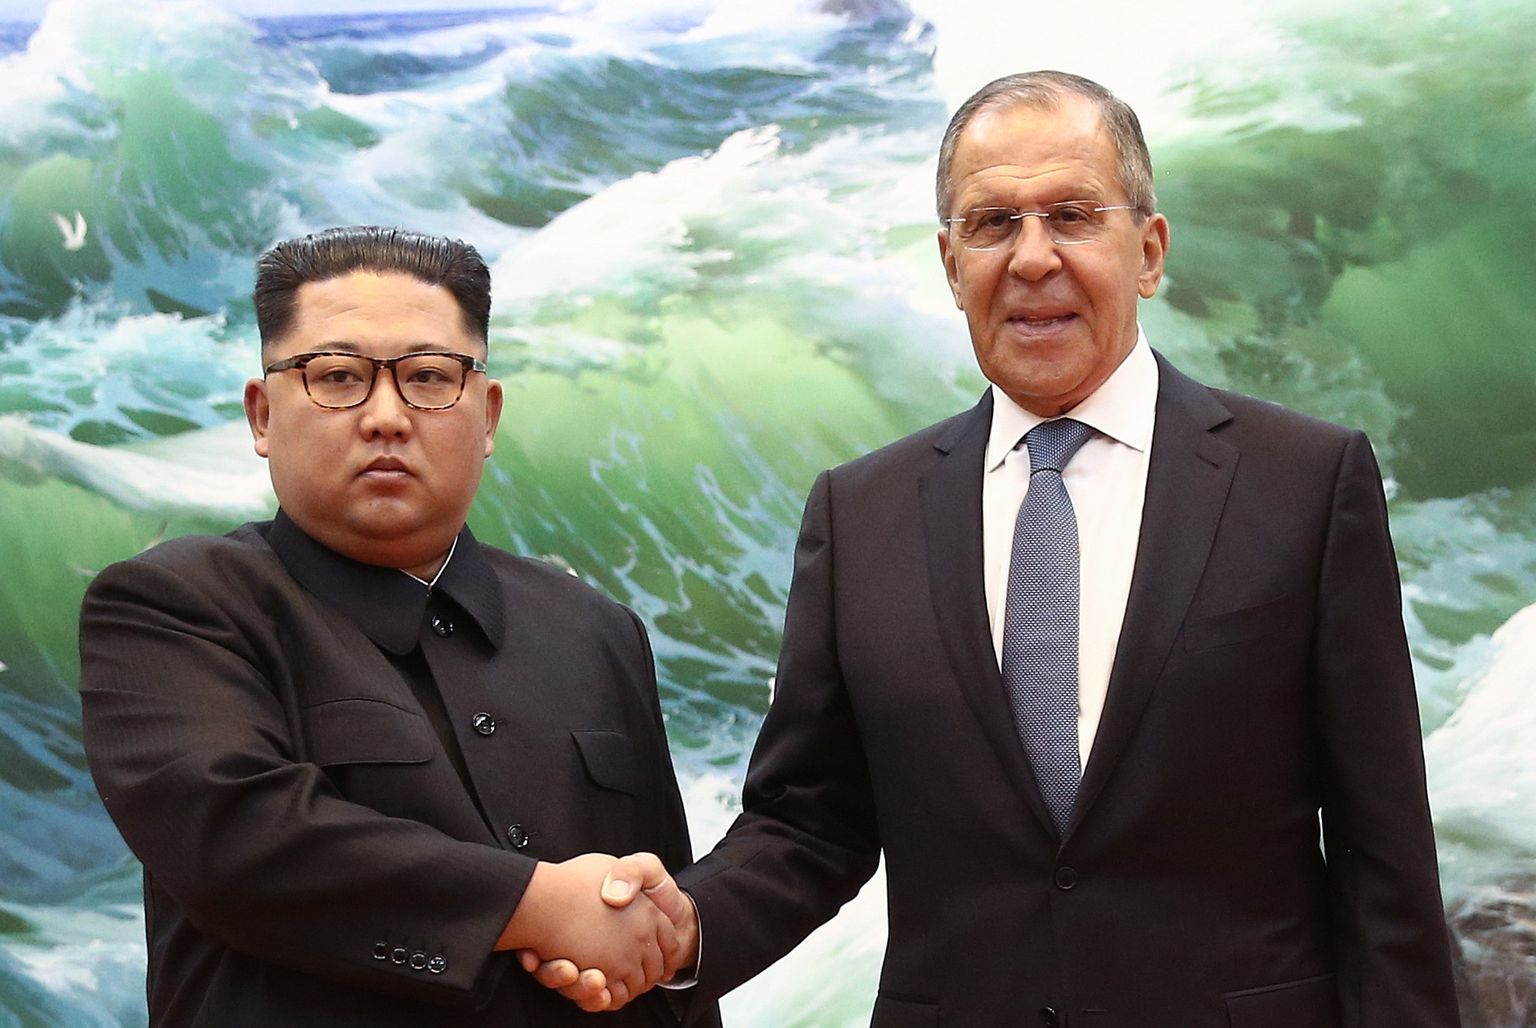 Põhja-Korea liider Kim Jong-un ja Venemaa välisminister Sergei Lavrov 2018. aasta kevadel Pyongyangis.